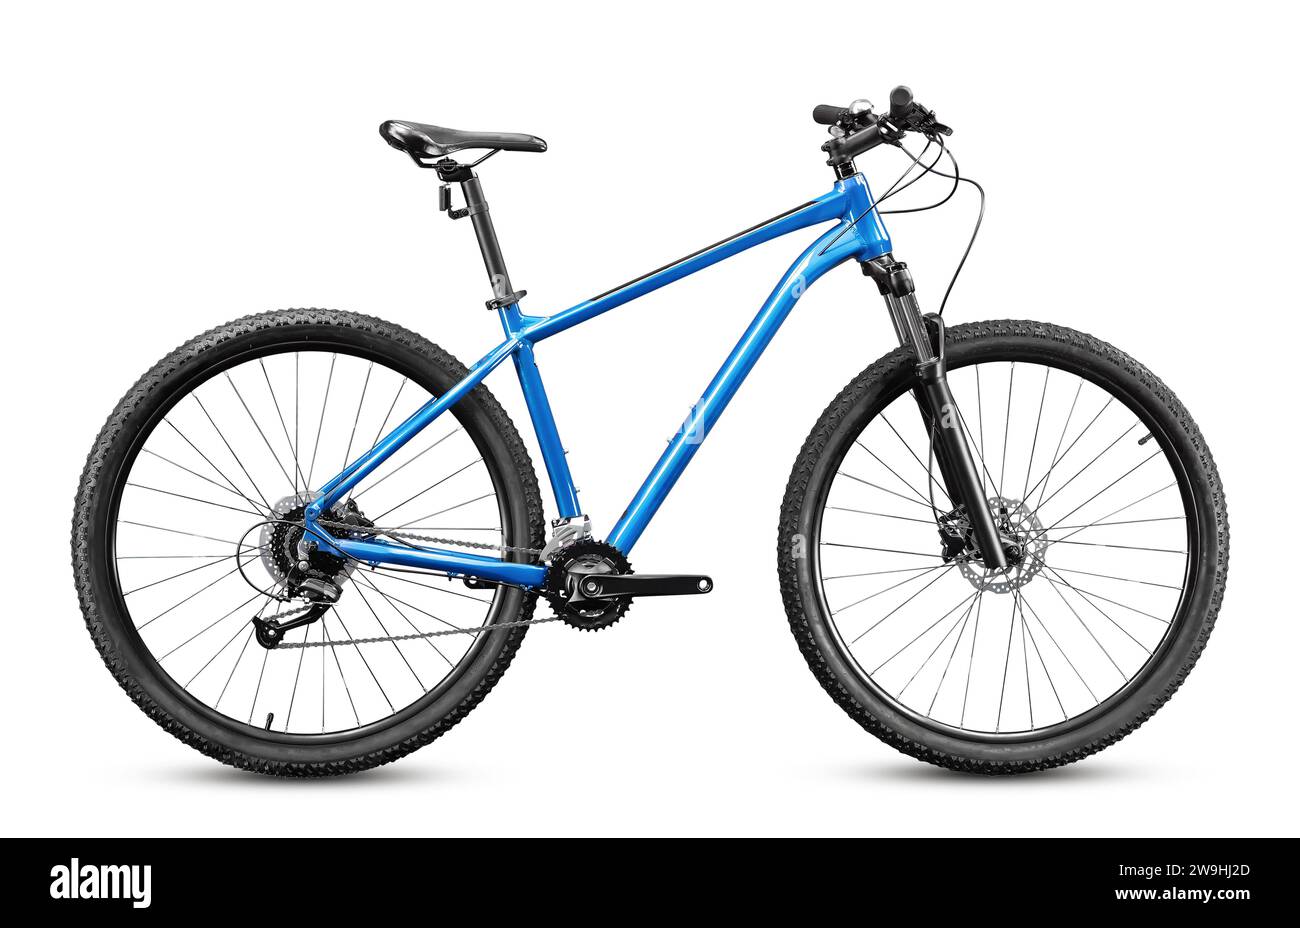 Nuova bicicletta da cross country con ruote da 29 pollici e telaio blu isolato su sfondo bianco. Foto Stock